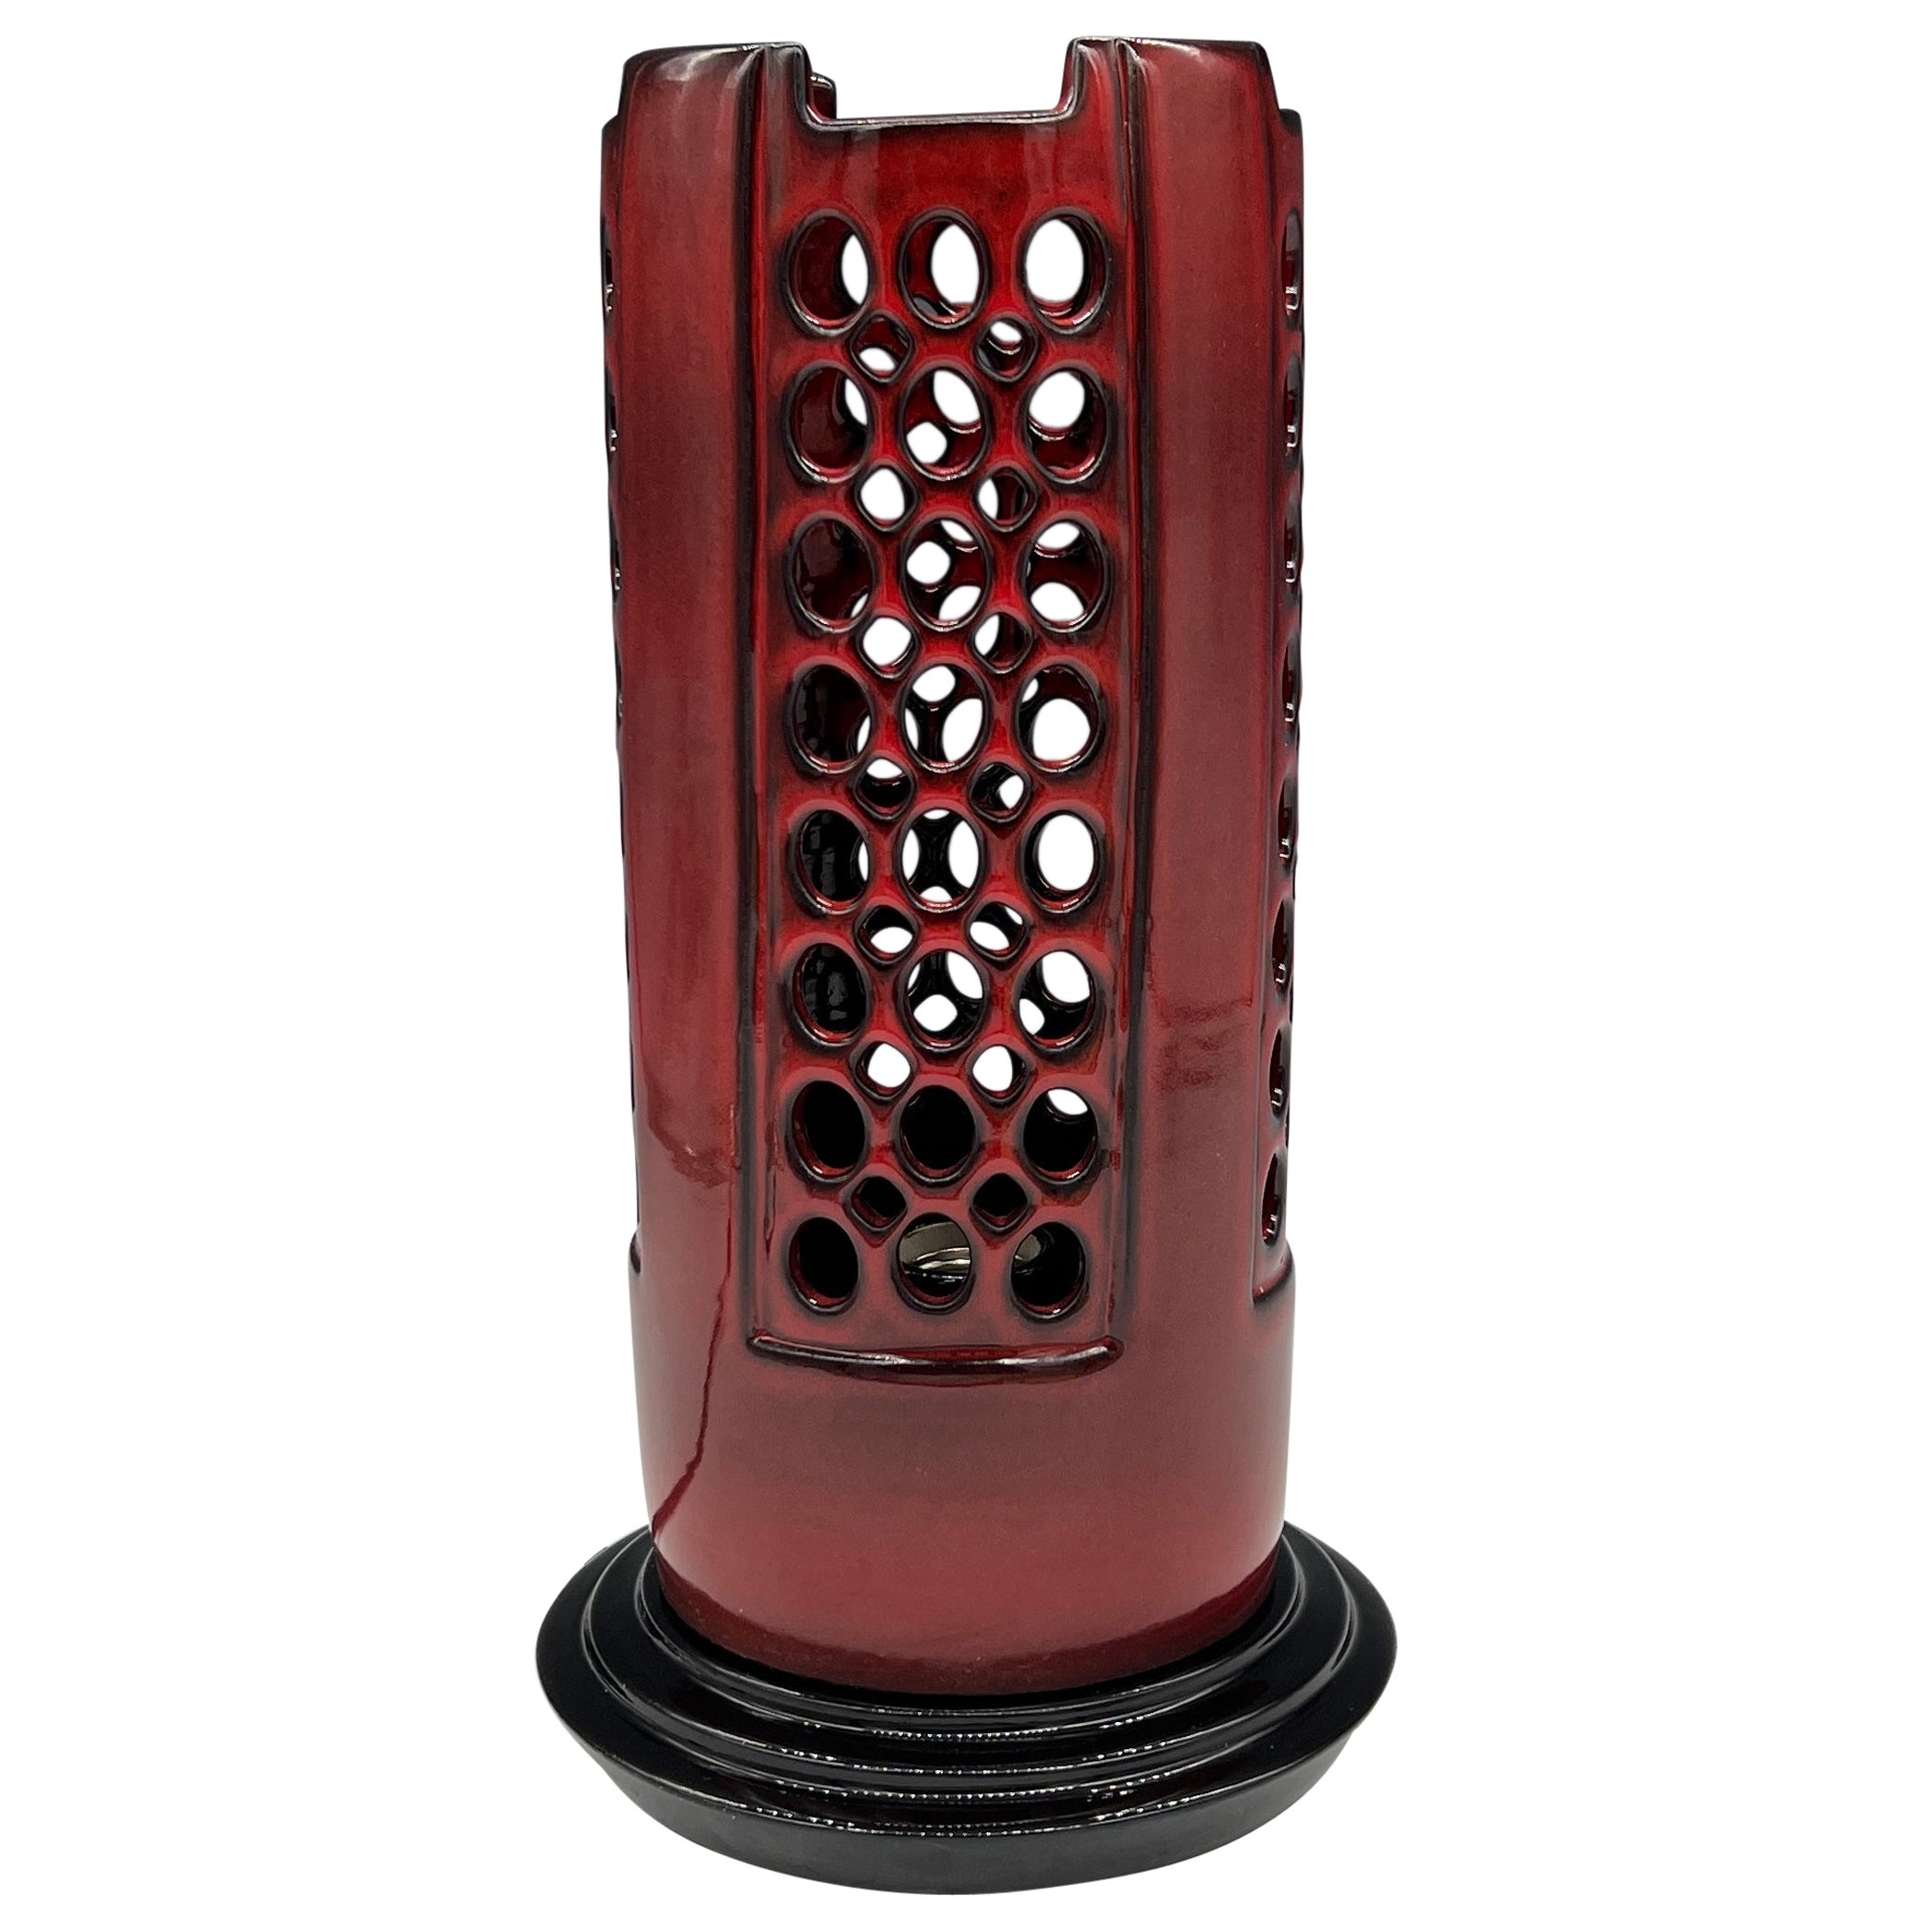 Rote Deko-Tischlampe mit durchbrochenem Rand